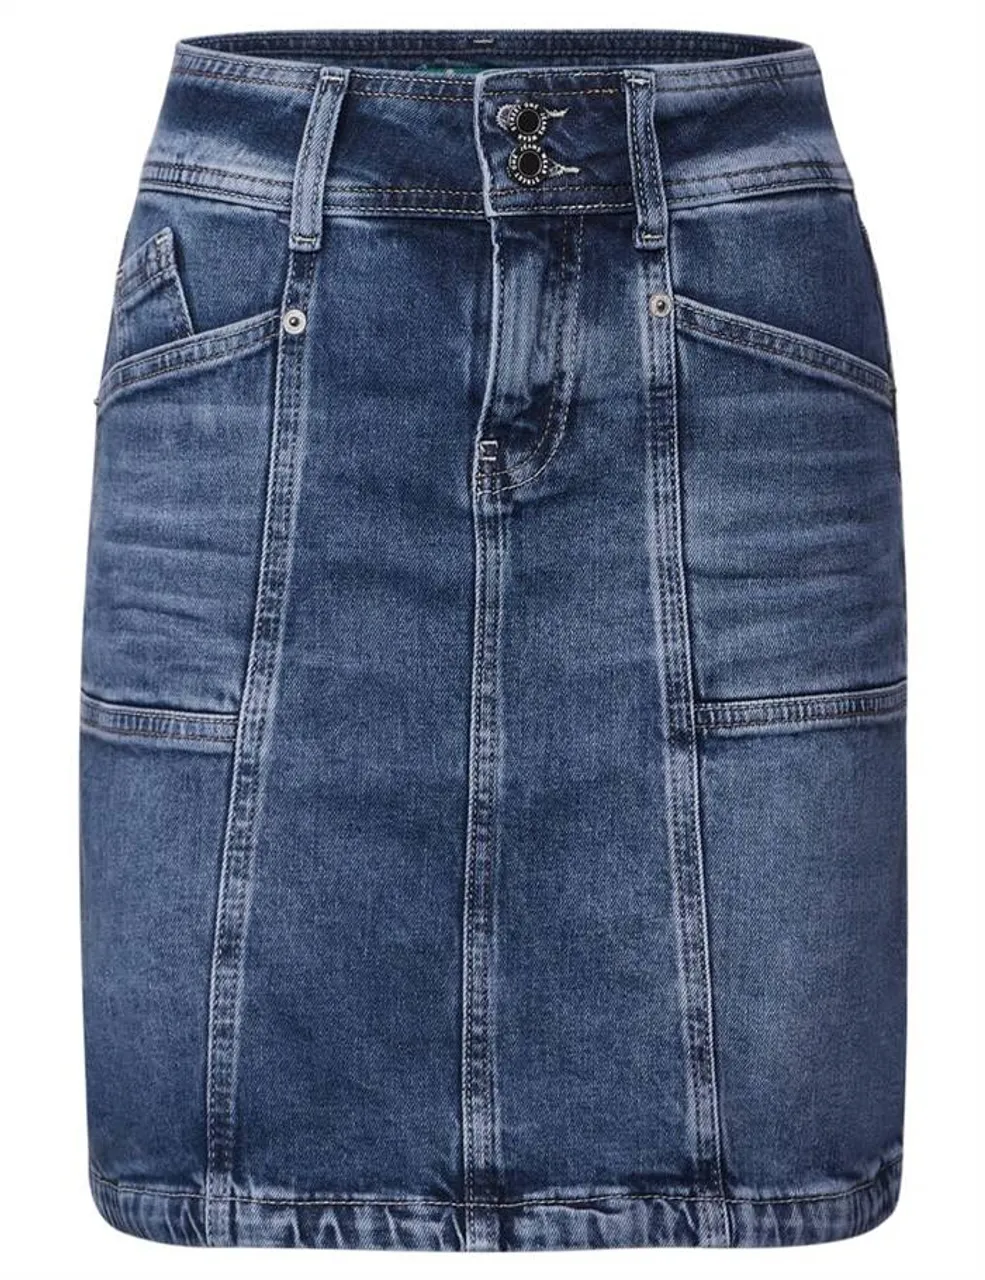 Midiröcke Denim-Skirt,hw,indigo